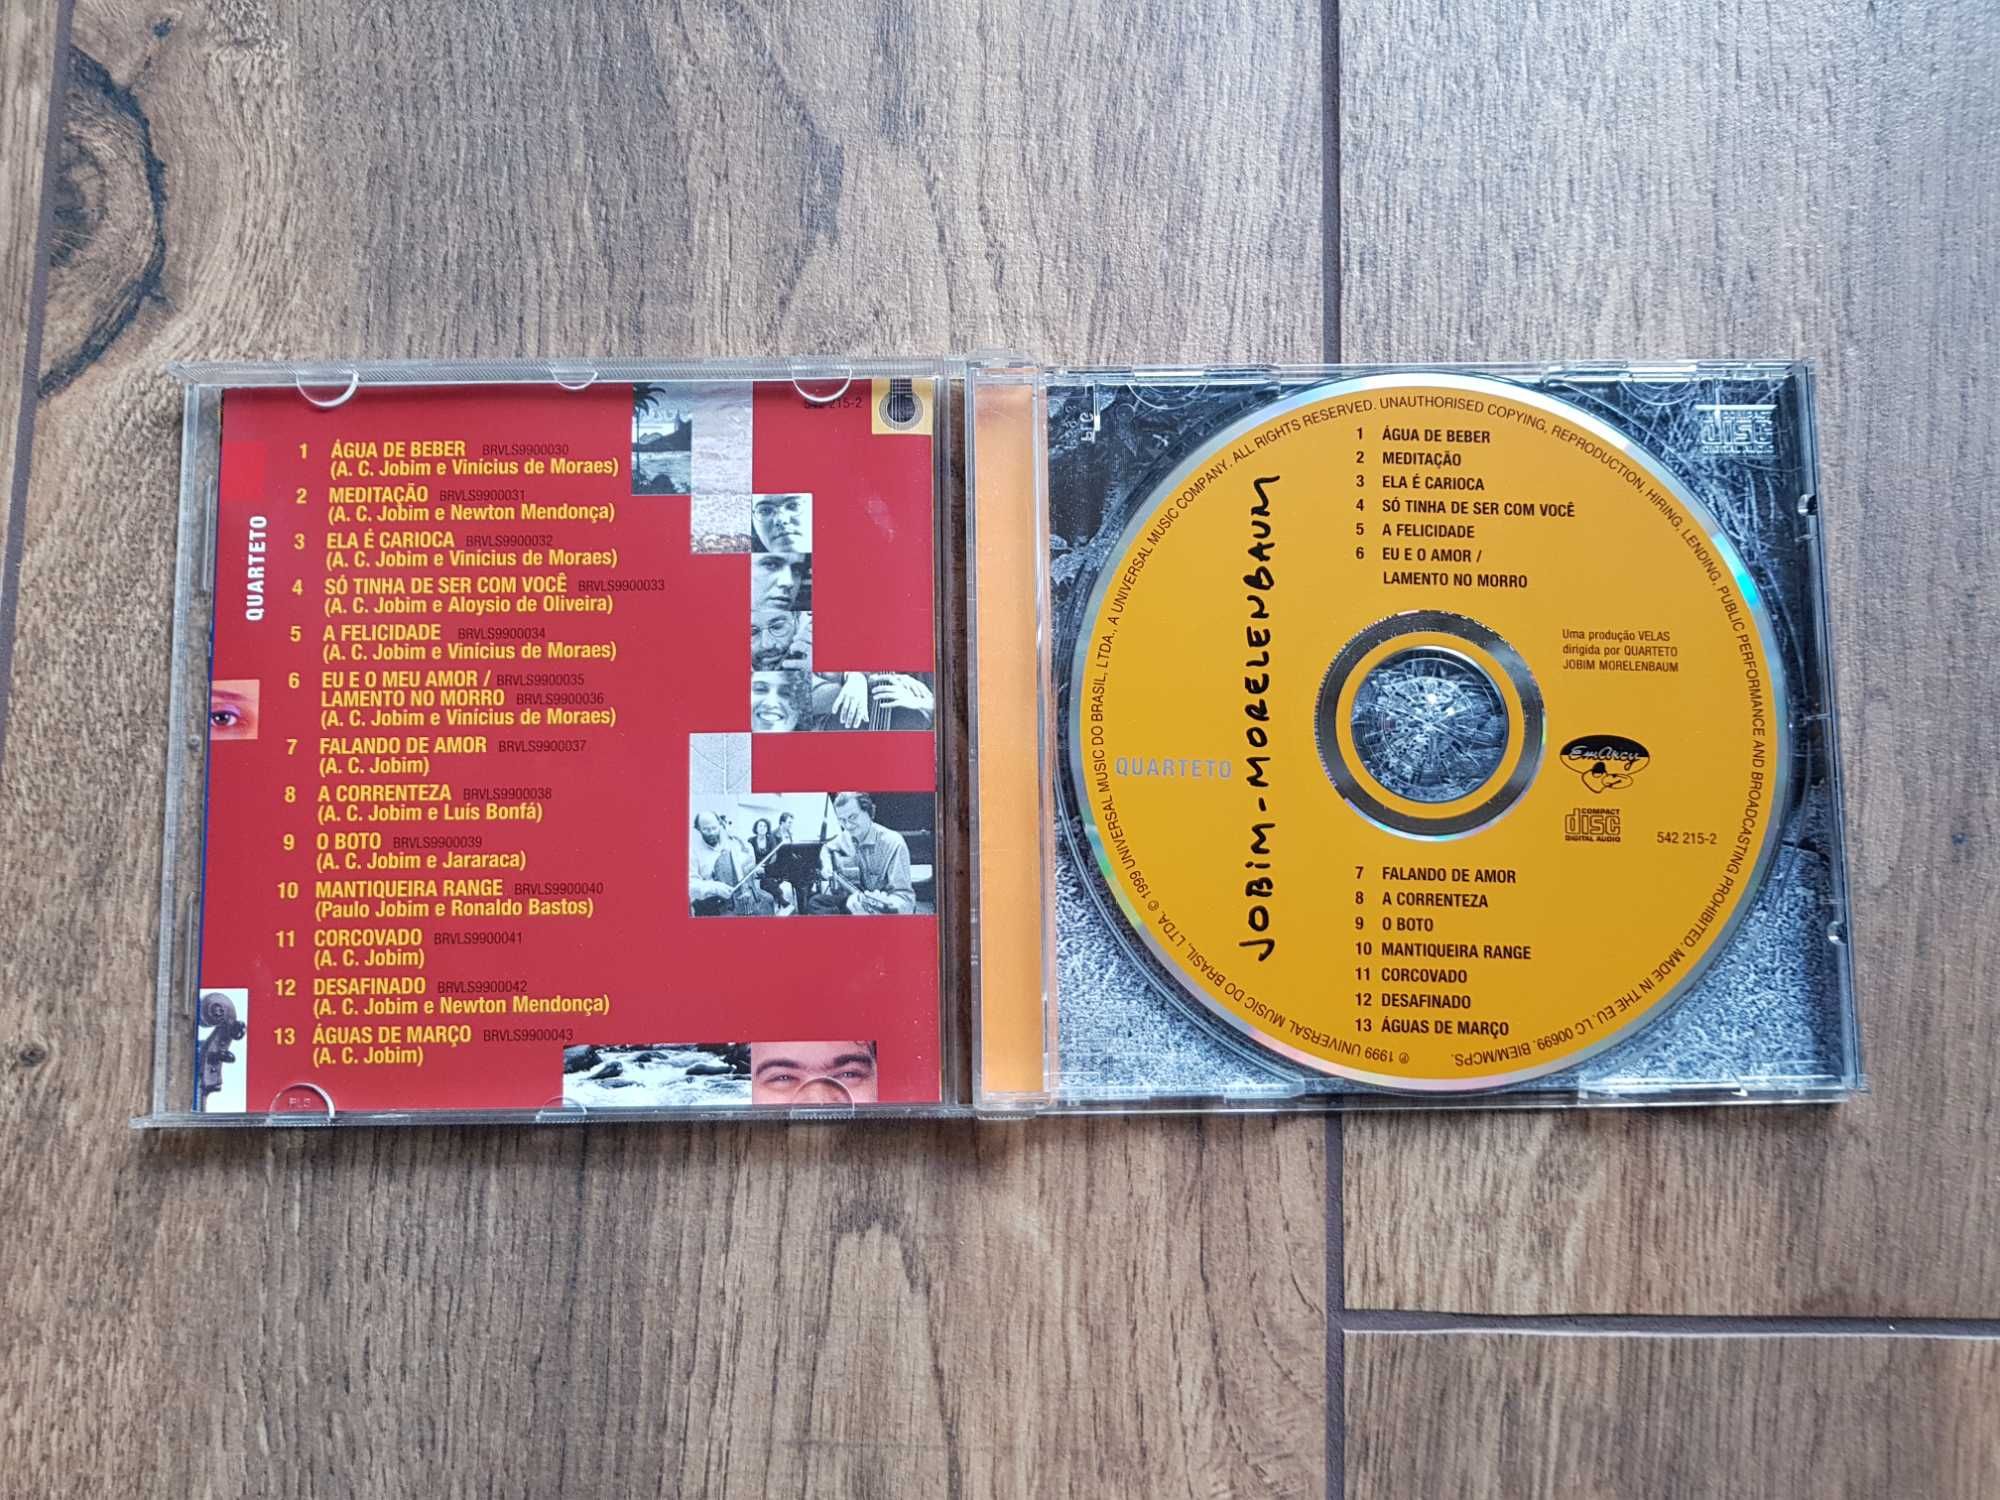 płyta CD: Jobim Morelenbaum "Quarteto"